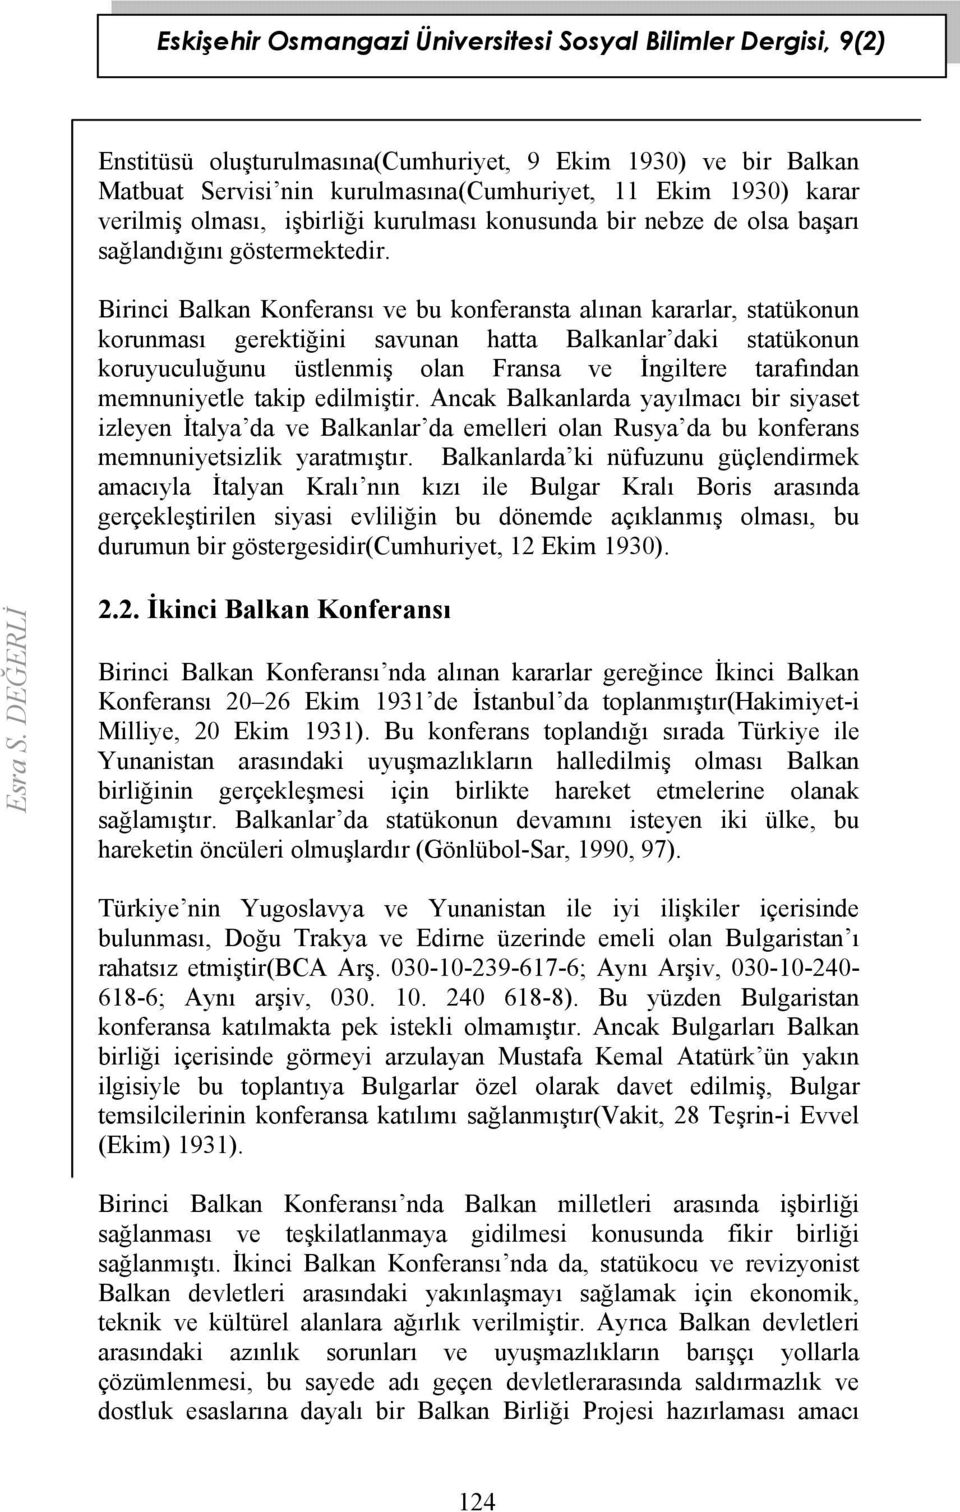 Birinci Balkan Konferansı ve bu konferansta alınan kararlar, statükonun korunması gerektiğini savunan hatta Balkanlar daki statükonun koruyuculuğunu üstlenmiş olan Fransa ve İngiltere tarafından